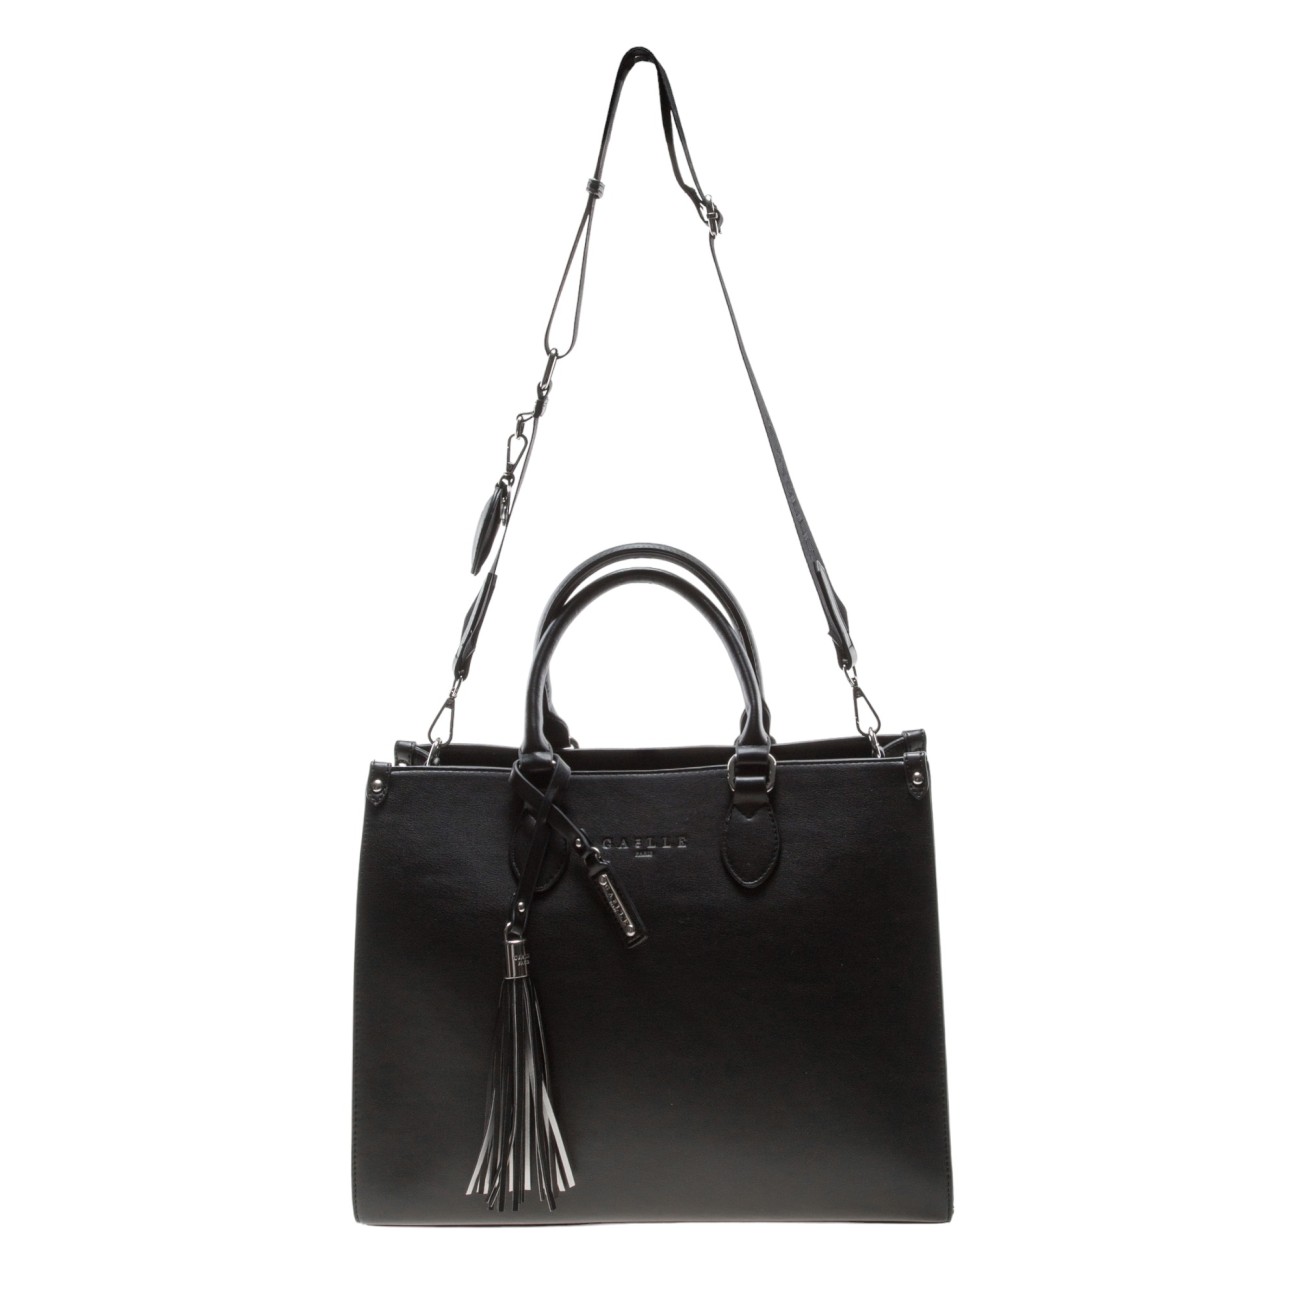 Gaelle black shopper bag